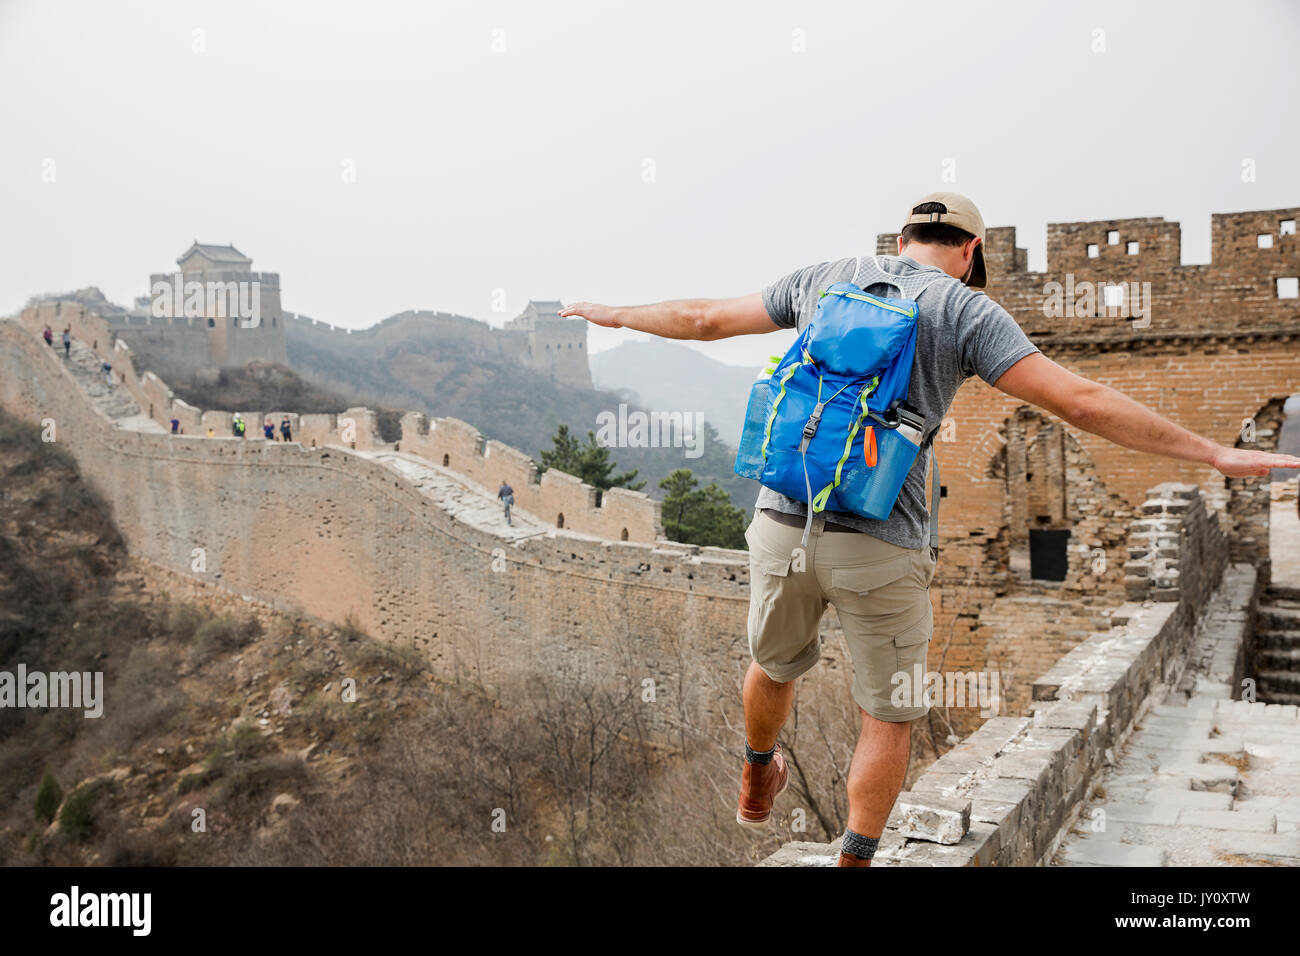 Tourist balancing on Great Wall of China, Beijing, China Stock Photo